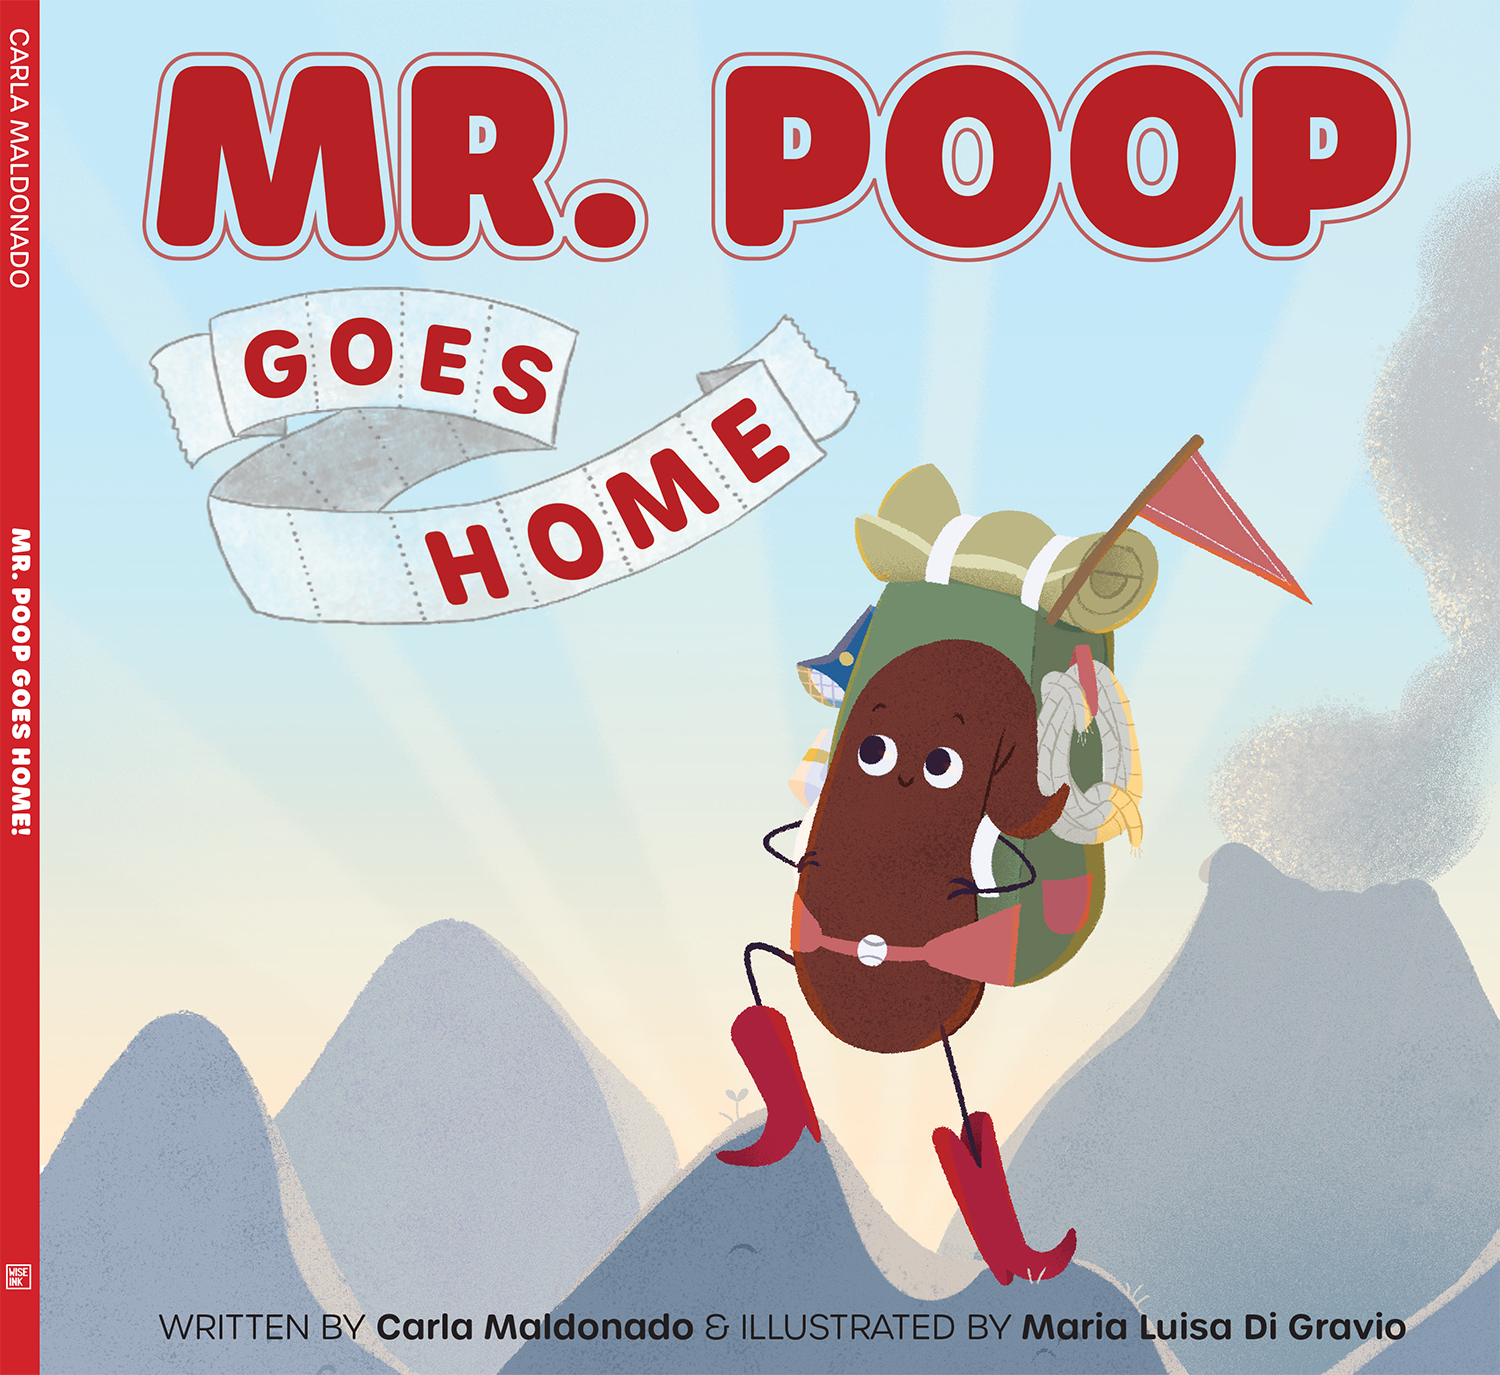 Mr. Poop Goes Home